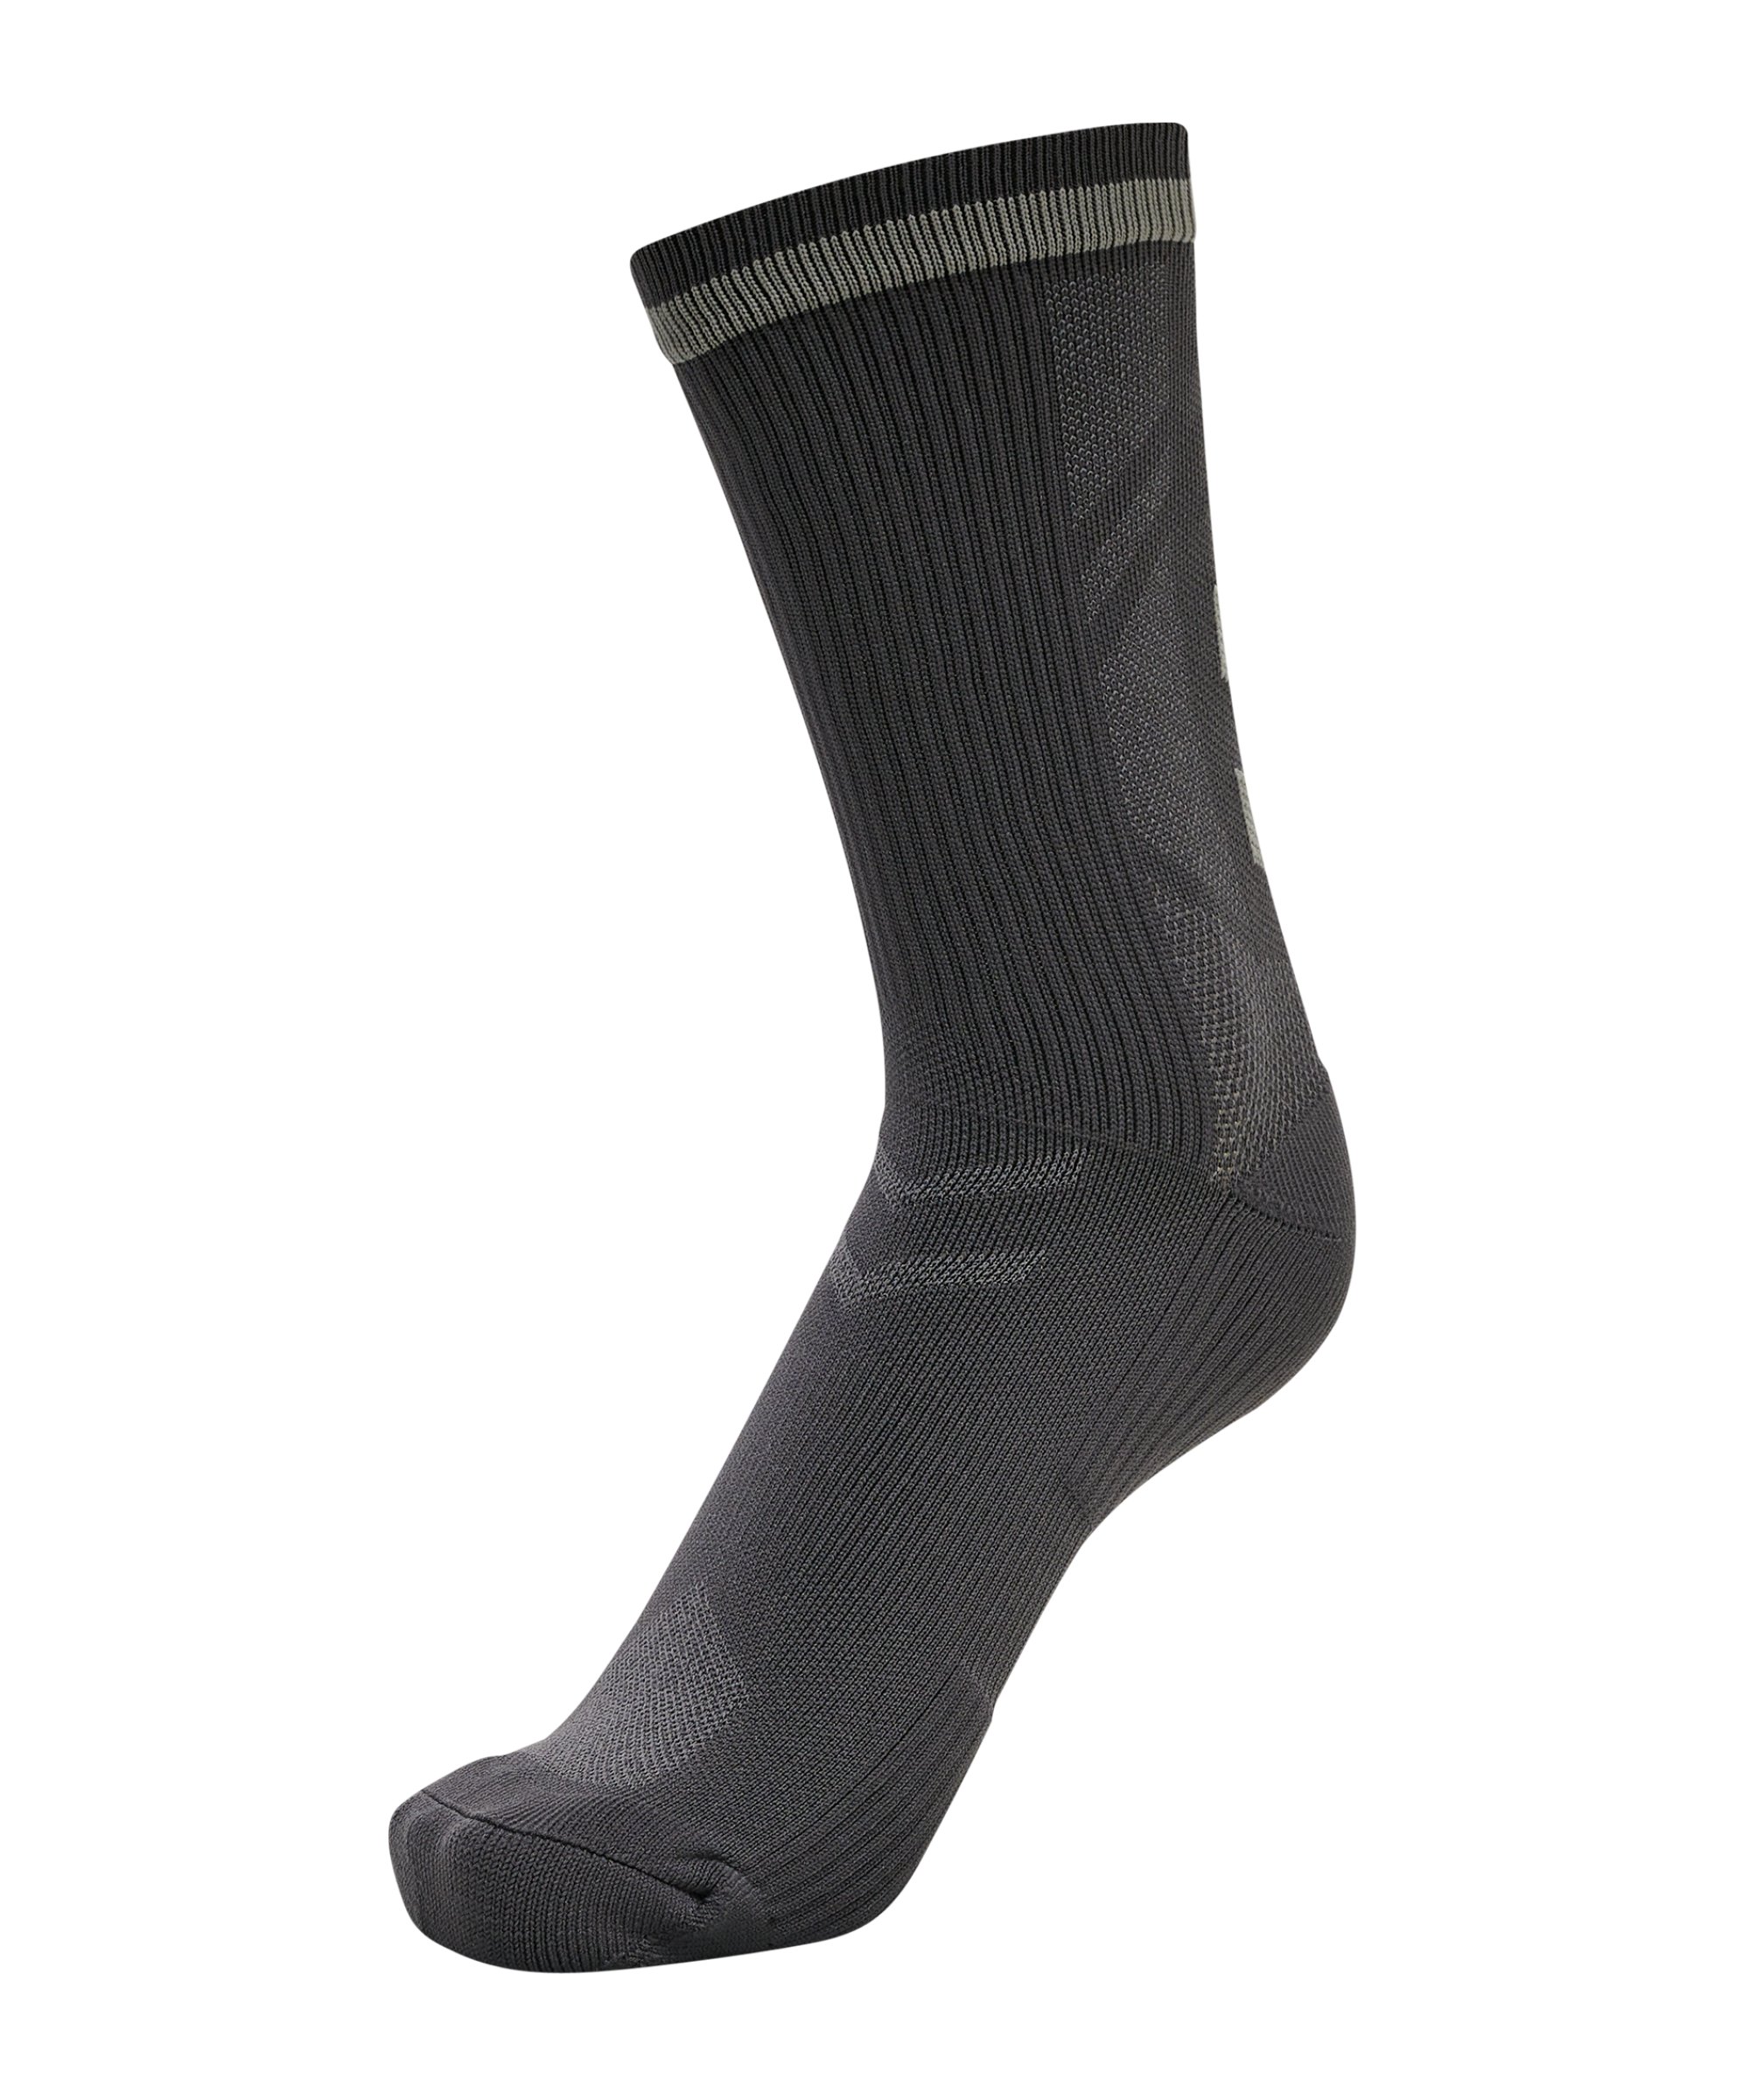 Hummel ELITE INDOOR Socken Grau F2162 - grau